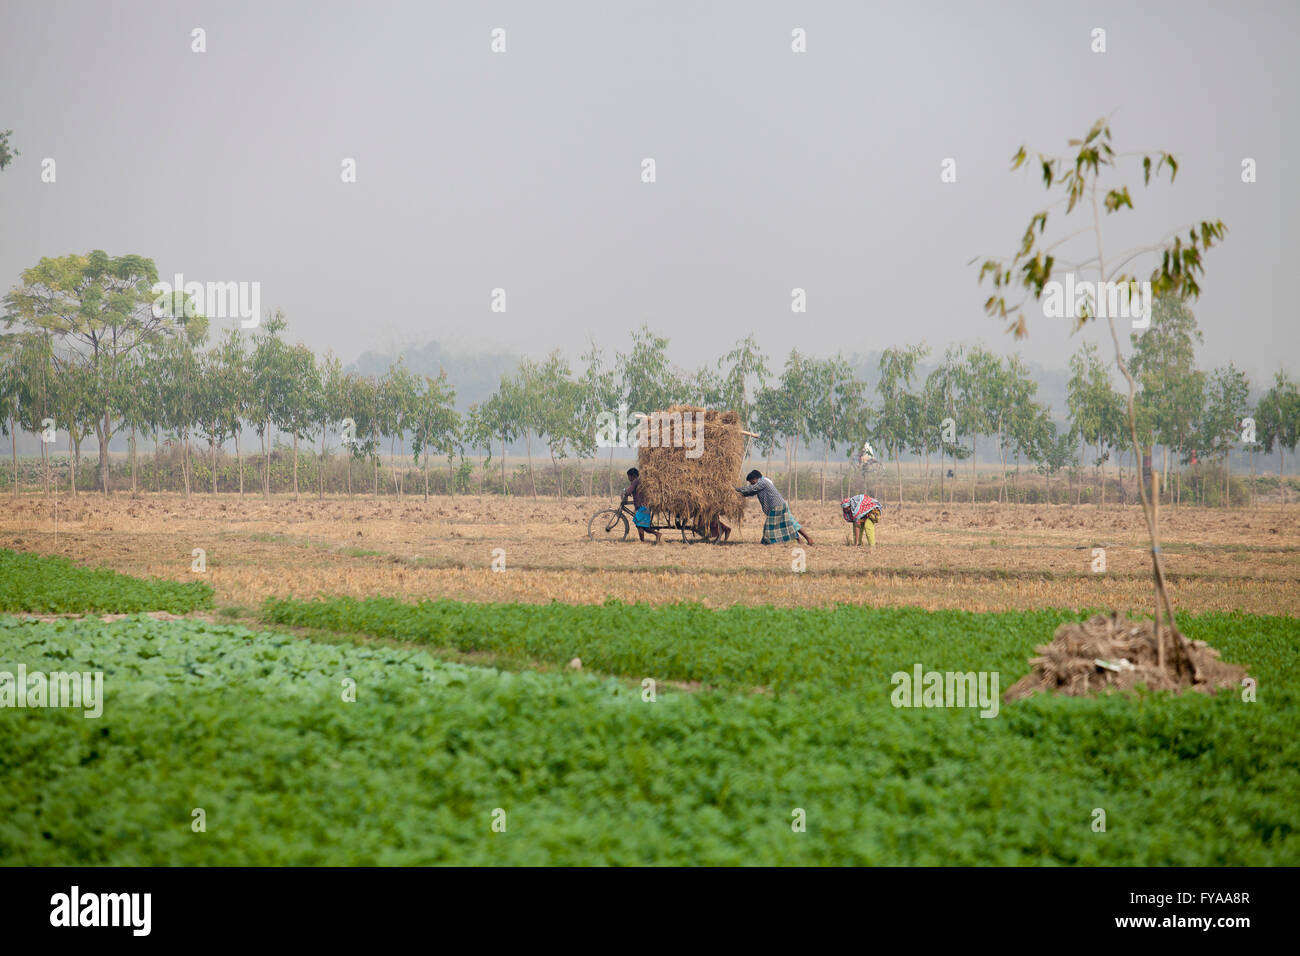 Potato and paddy fields © Jahangir Alam Onuchcha/Alamy Stock Photo